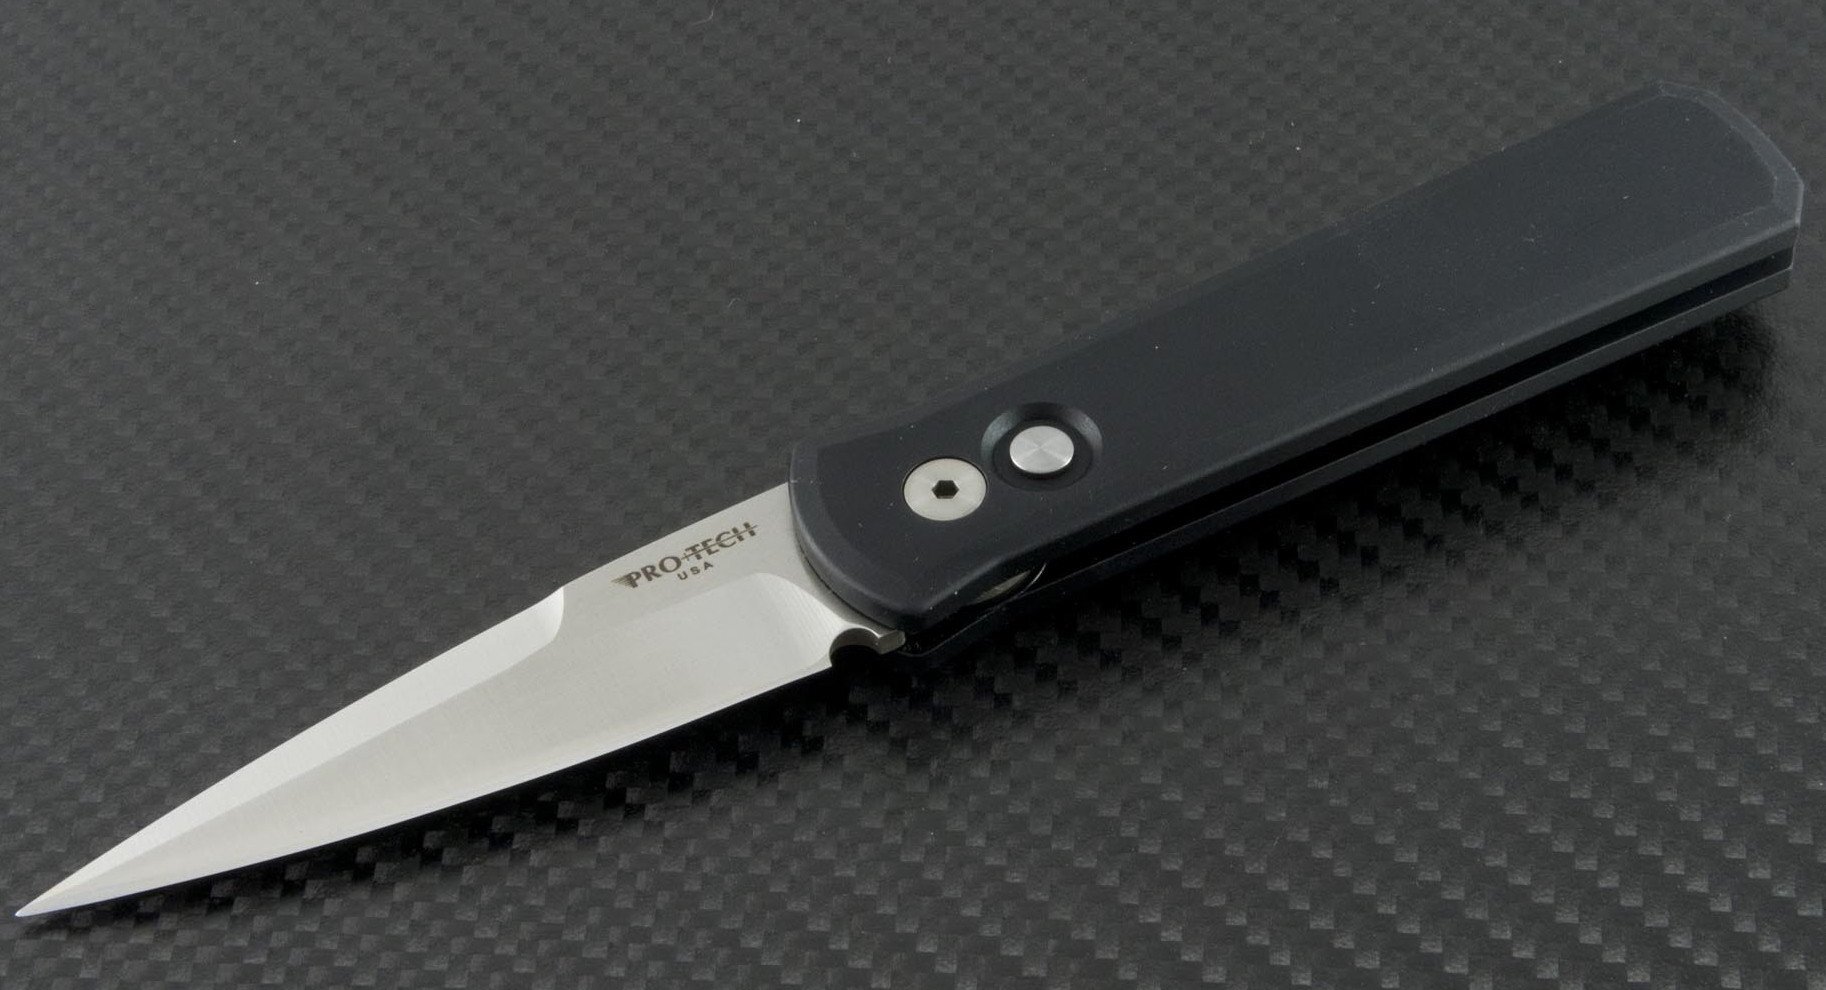 Автоматический складной нож Pro-Tech 1721 The Don, сталь Satin Finish 154CM, рукоять алюминий, черный - фото 1